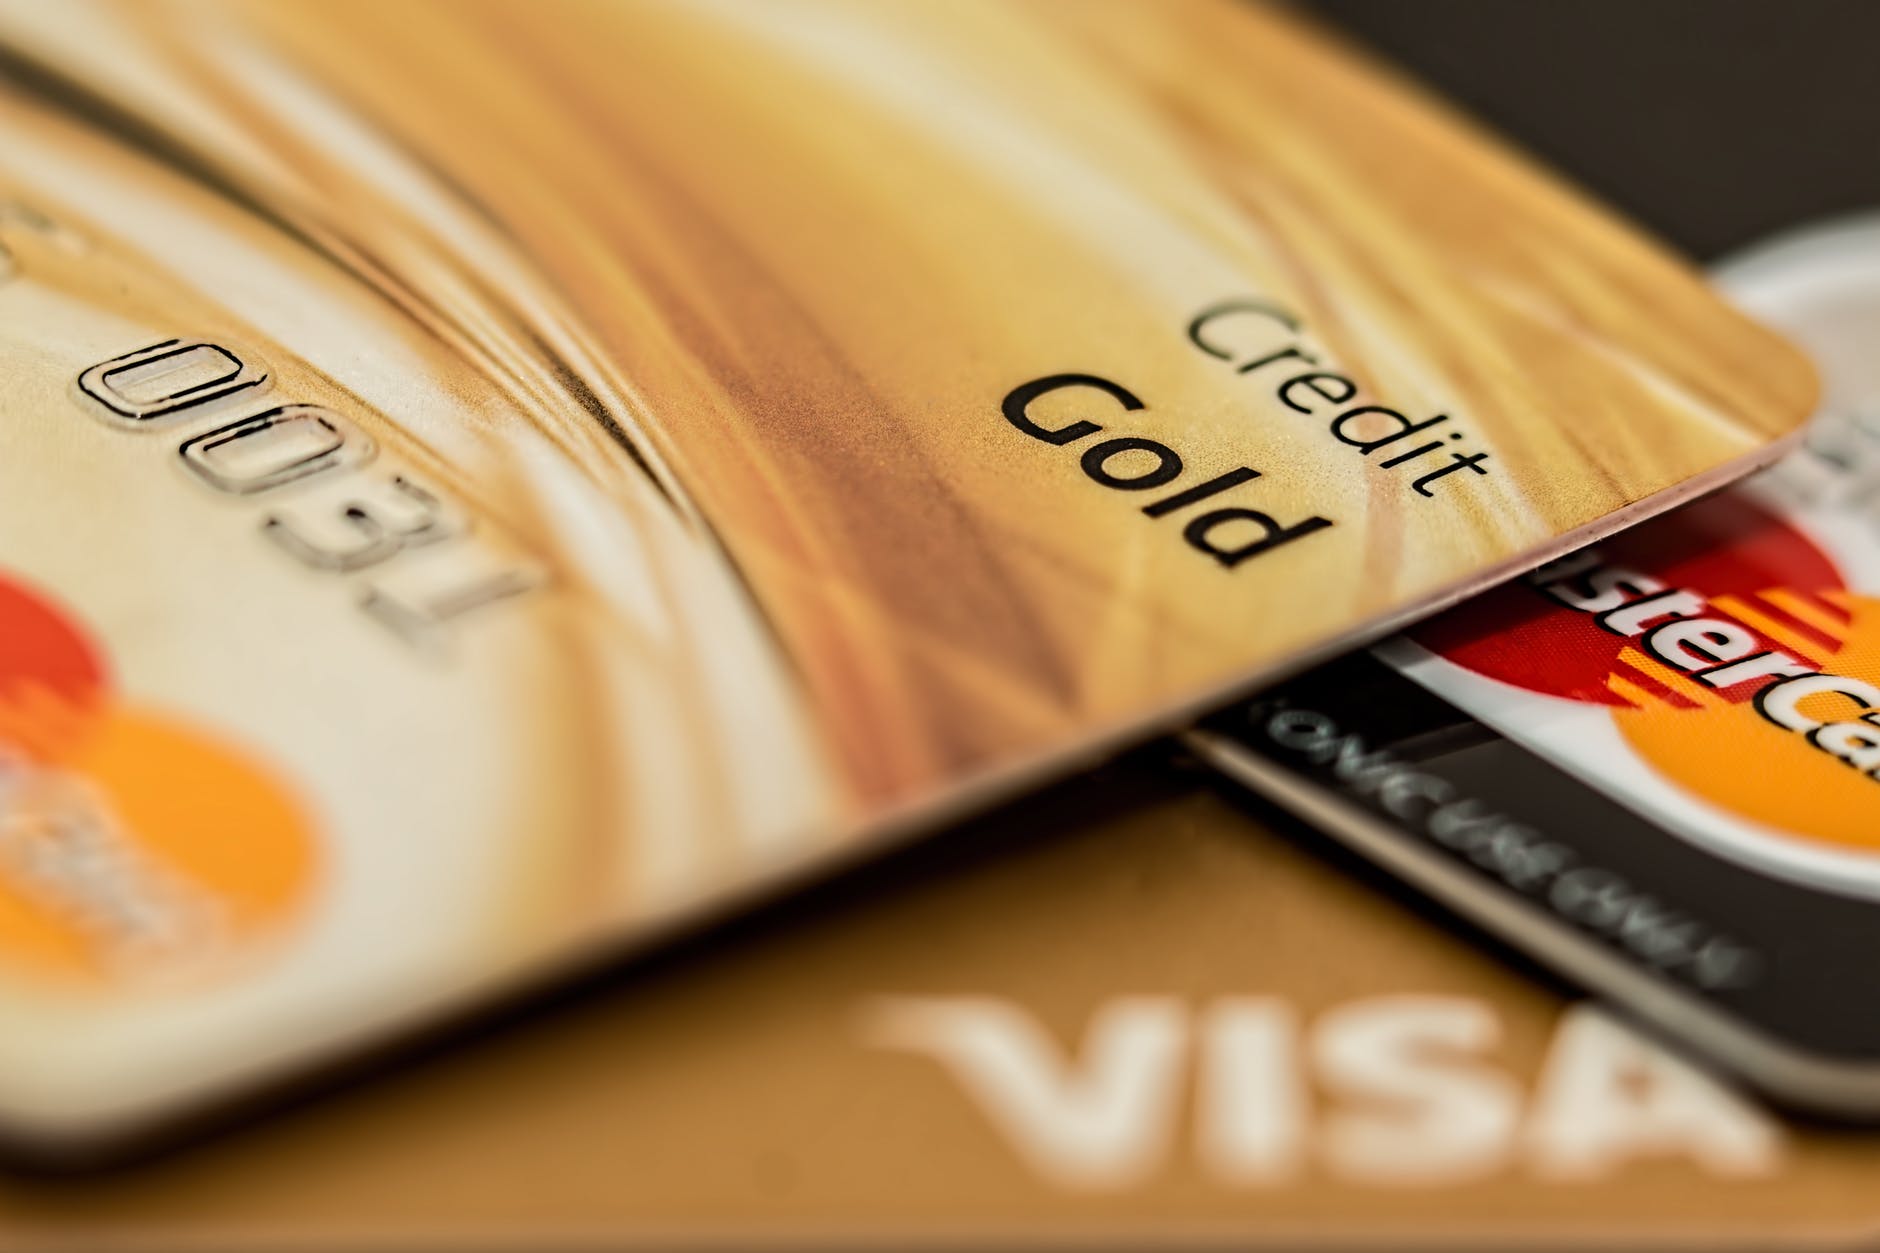 master card visa credit card gold